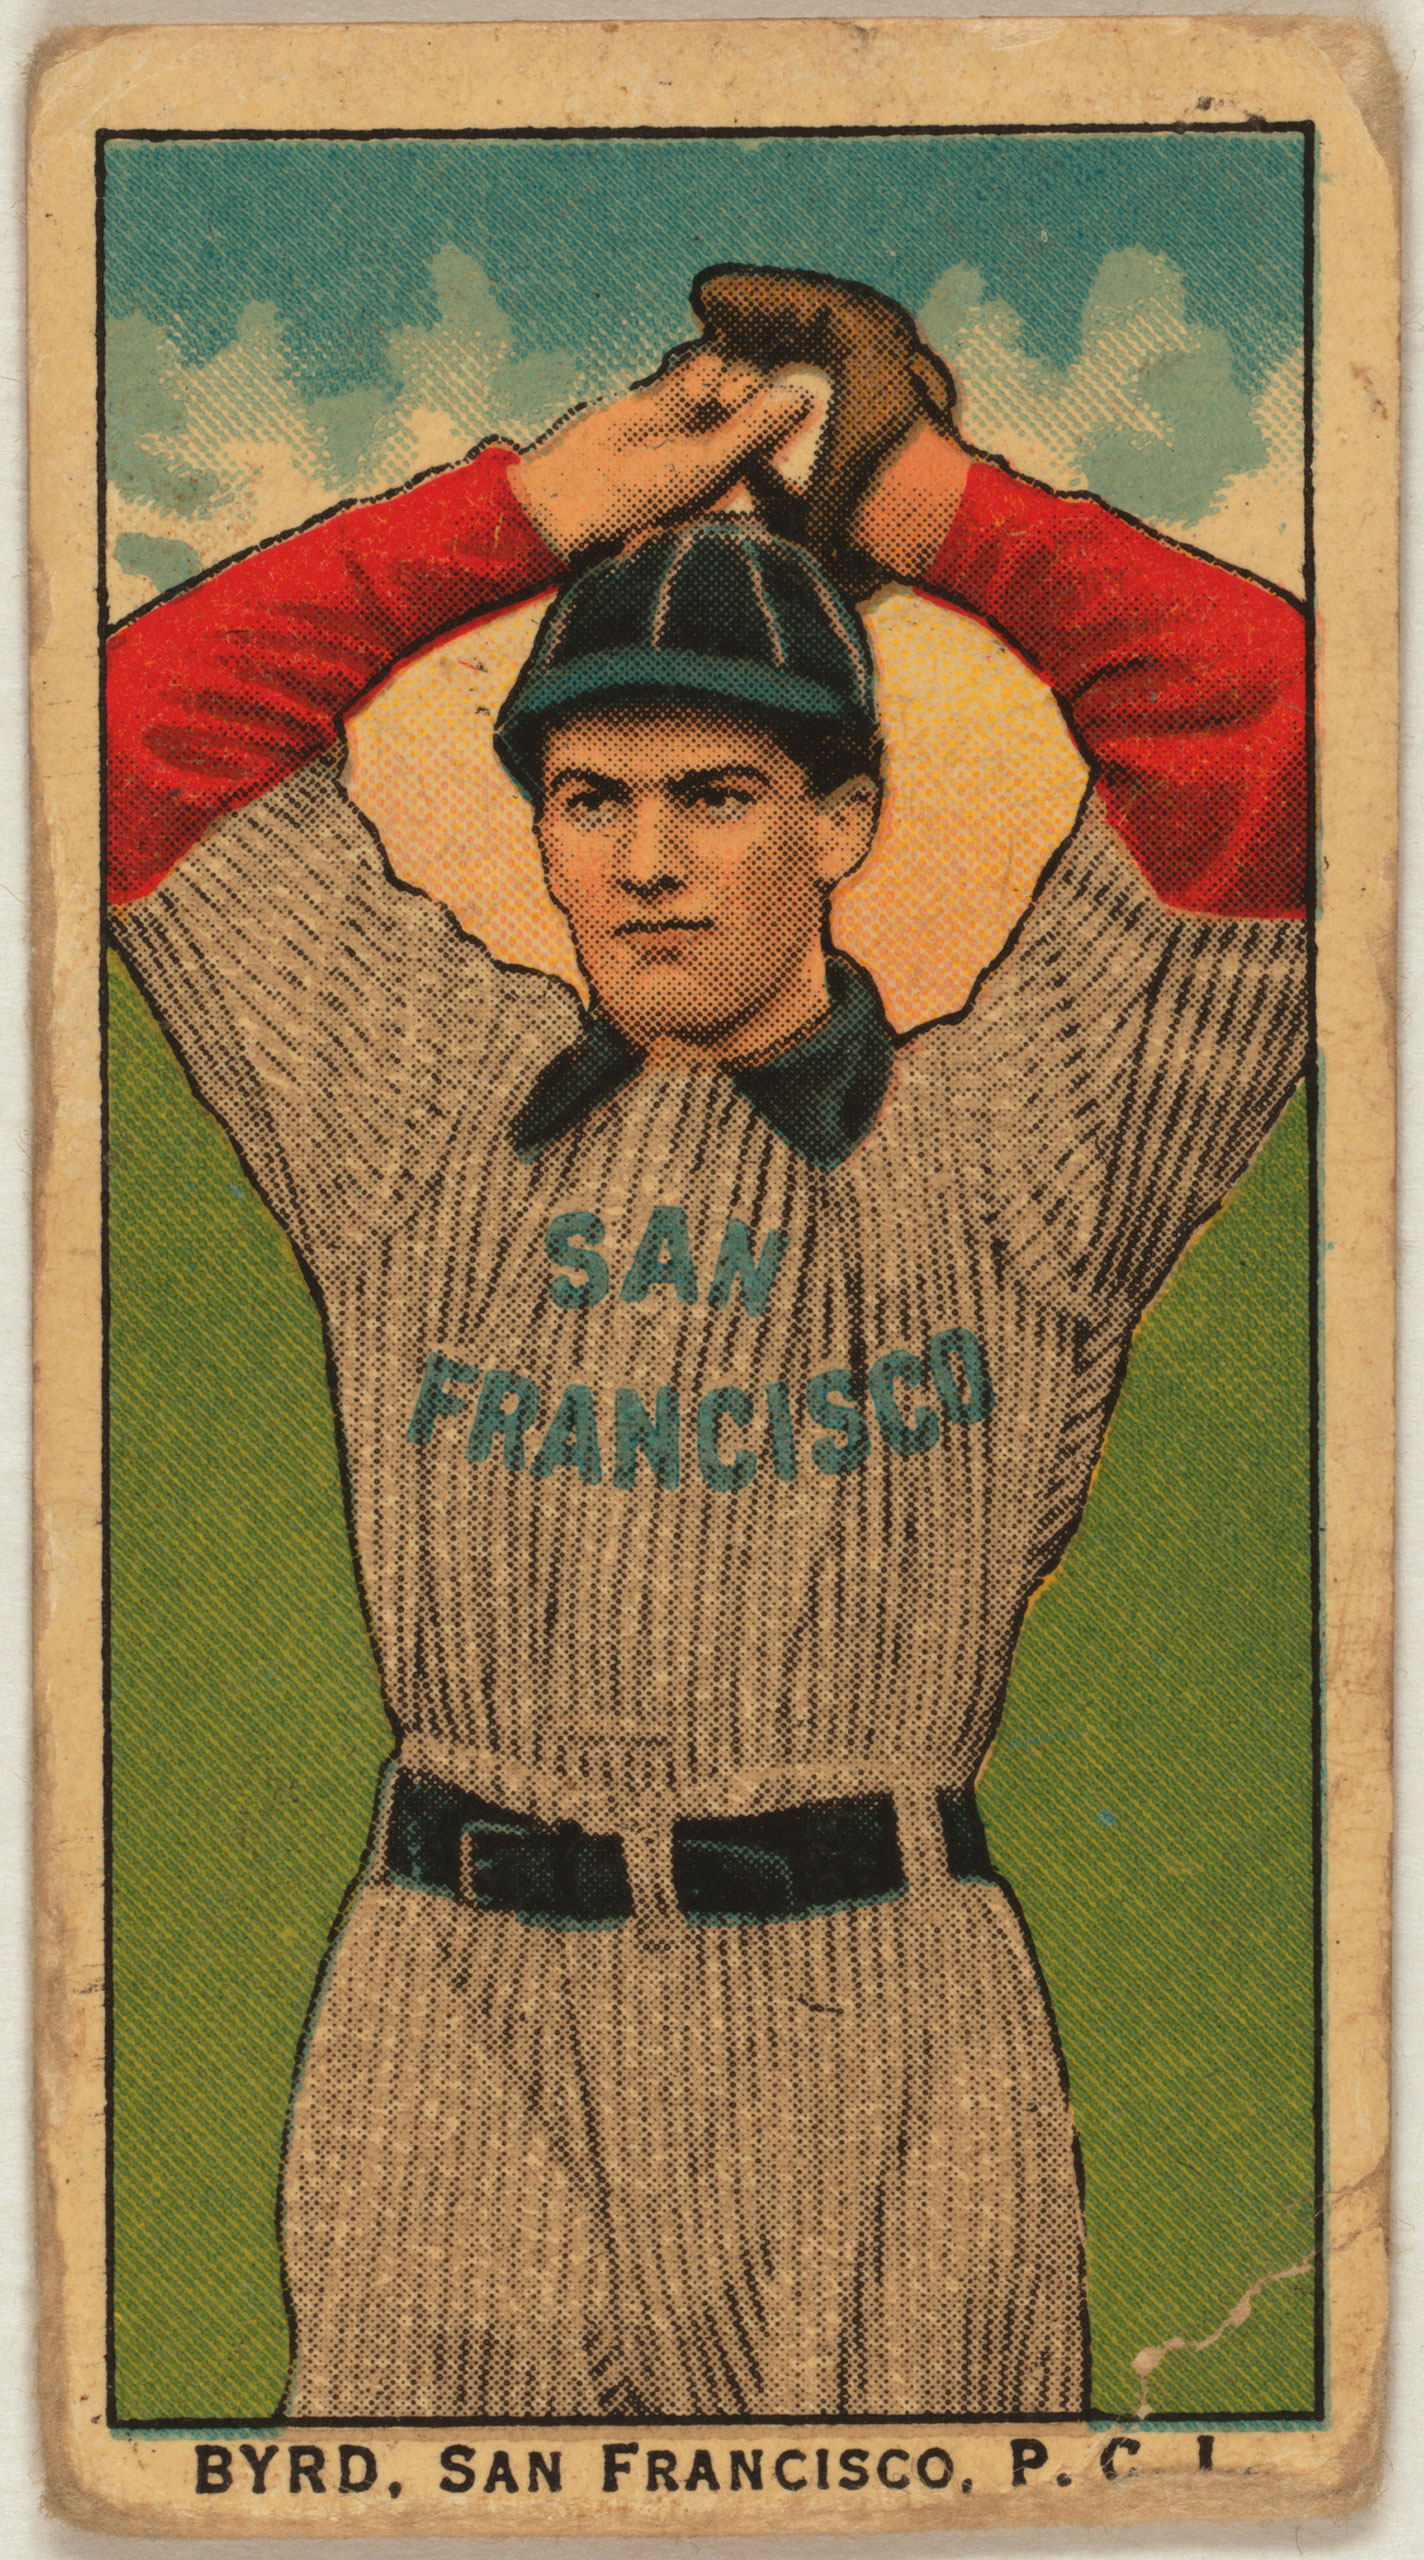 Byrd, San Francisco Team, baseball card, 1910.